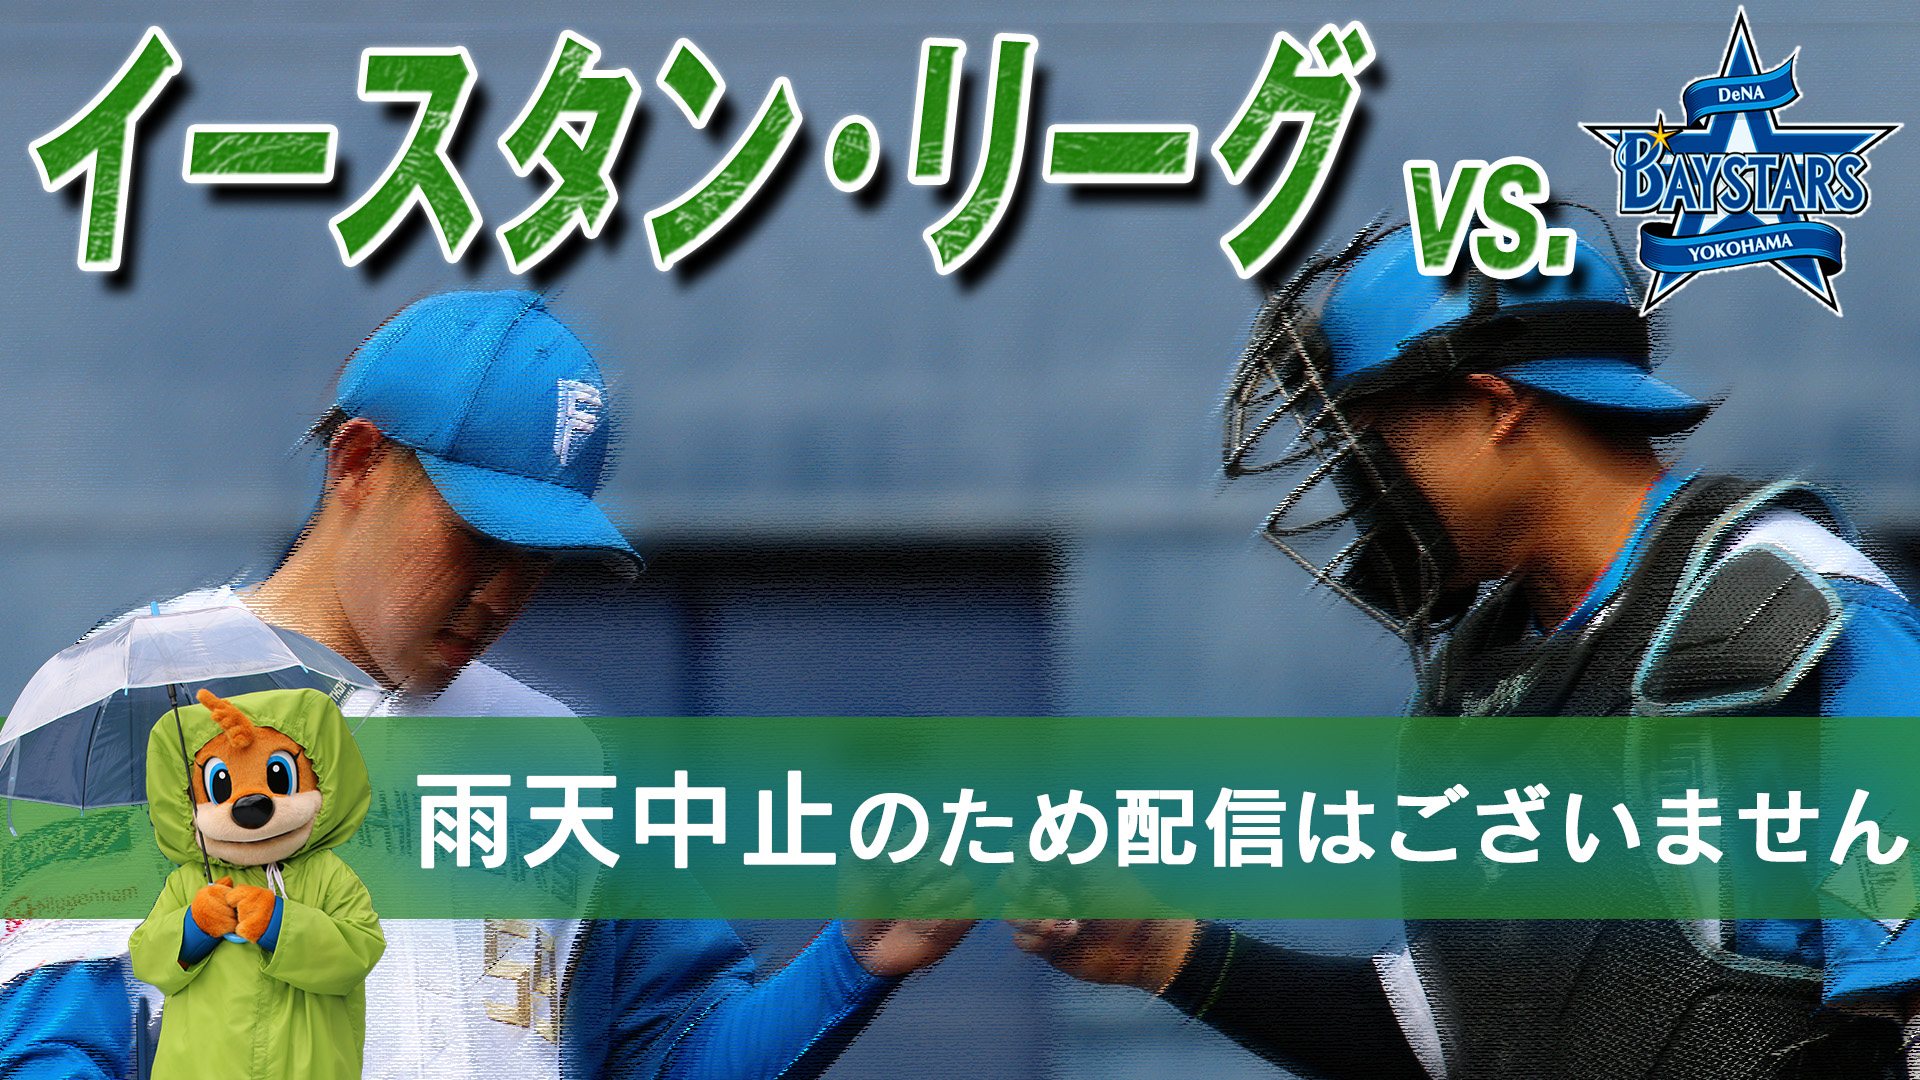 7月12日 (金) イースタン・リーグ vs 横浜DeNA 12:45～